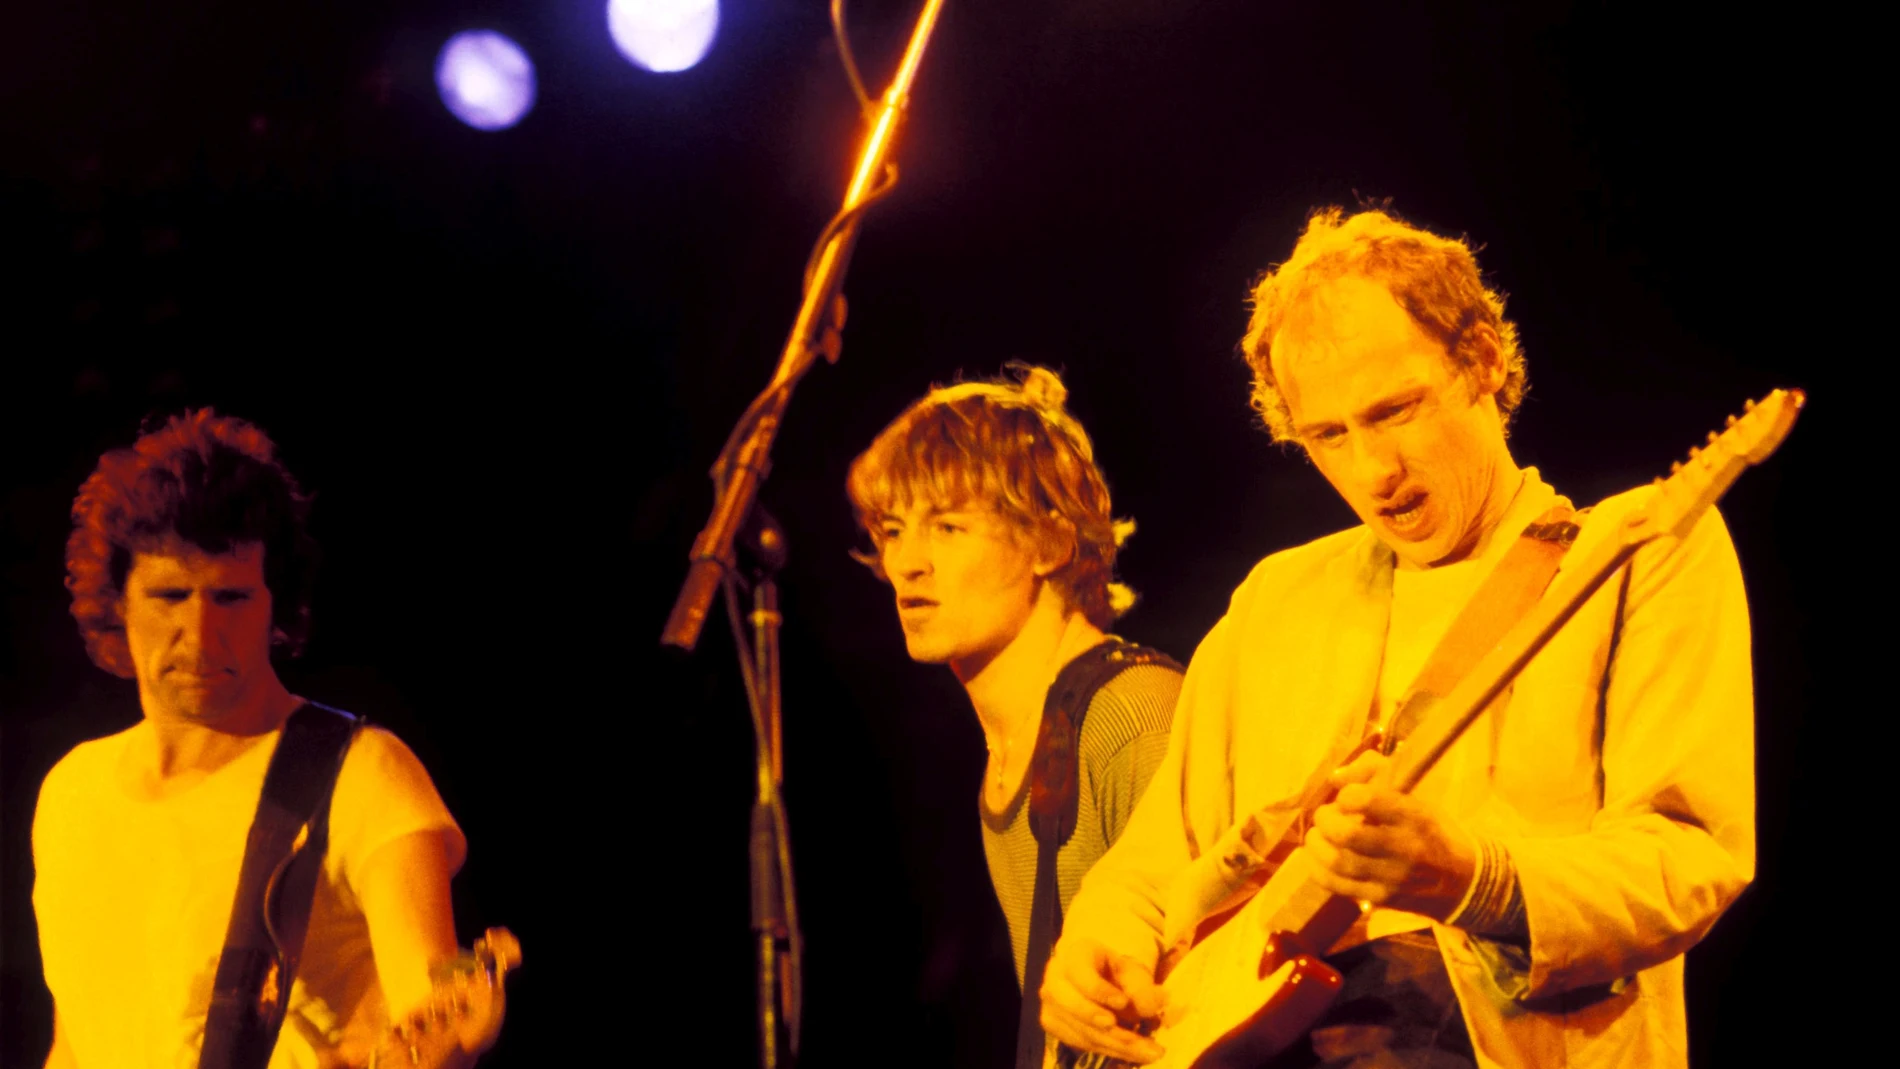 Desde la izda., John Illsley, Dave y Mark Knopfler, fundadores de Dire Straits